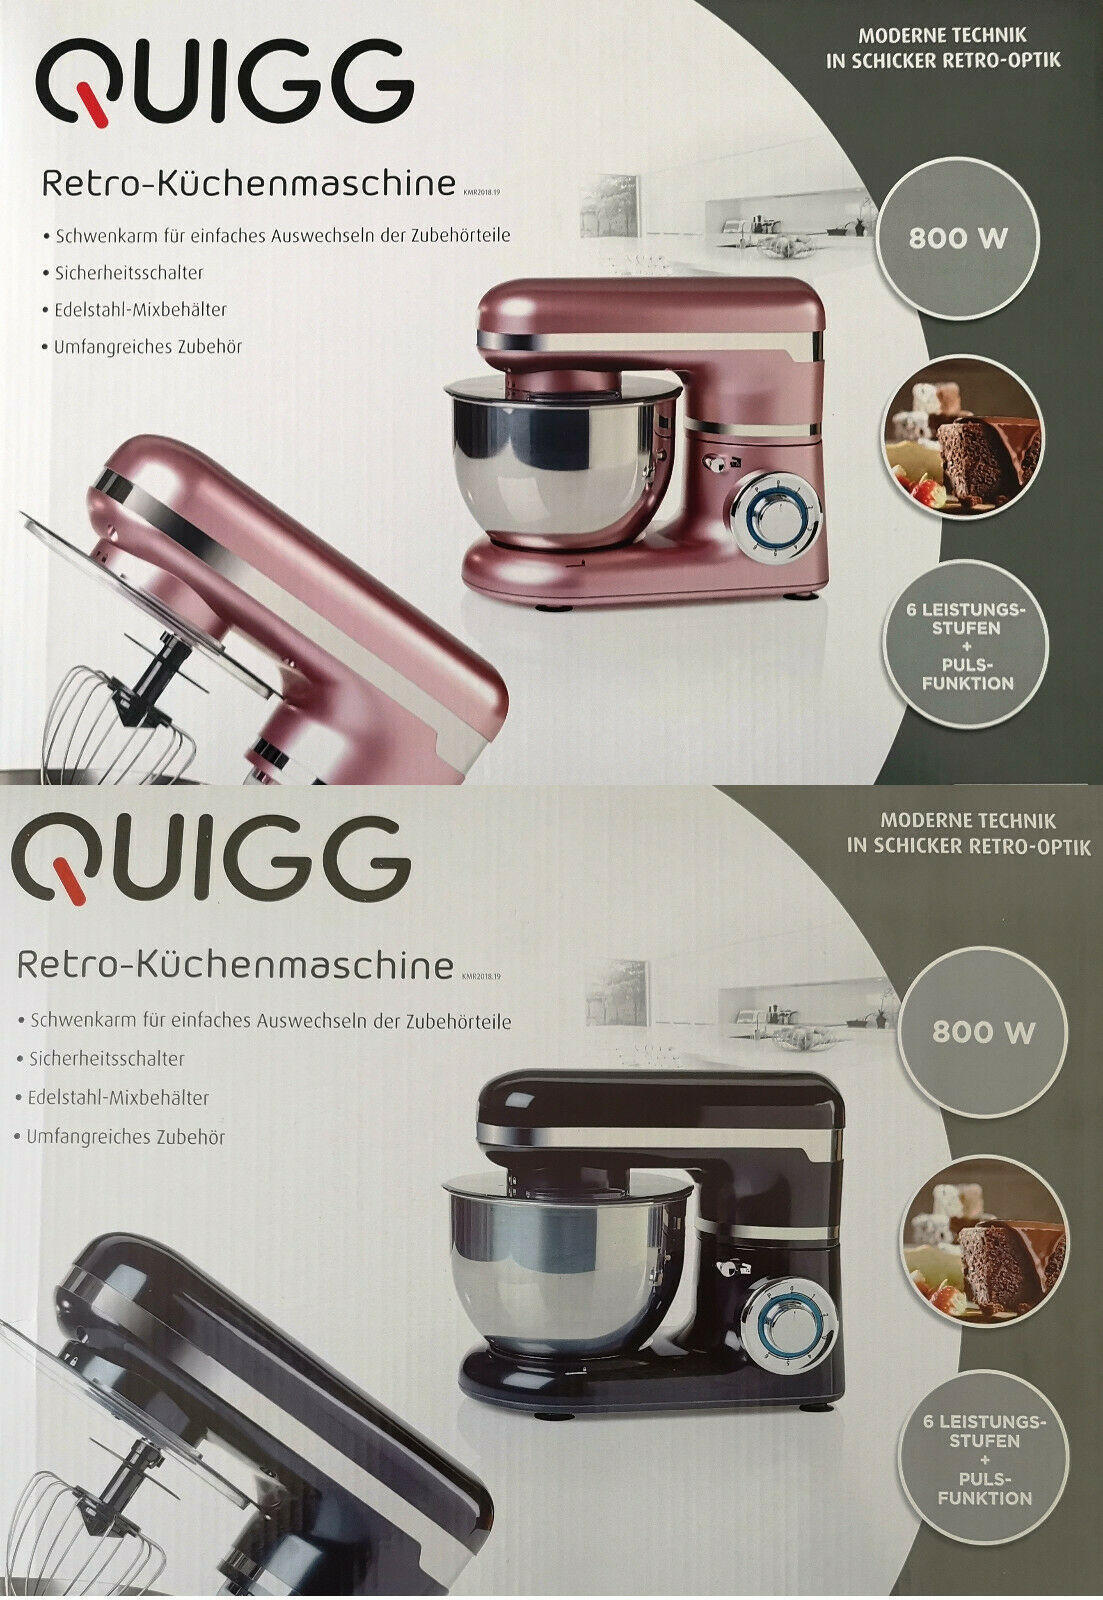 Quigg Retro Küchenmaschine 800 Watt